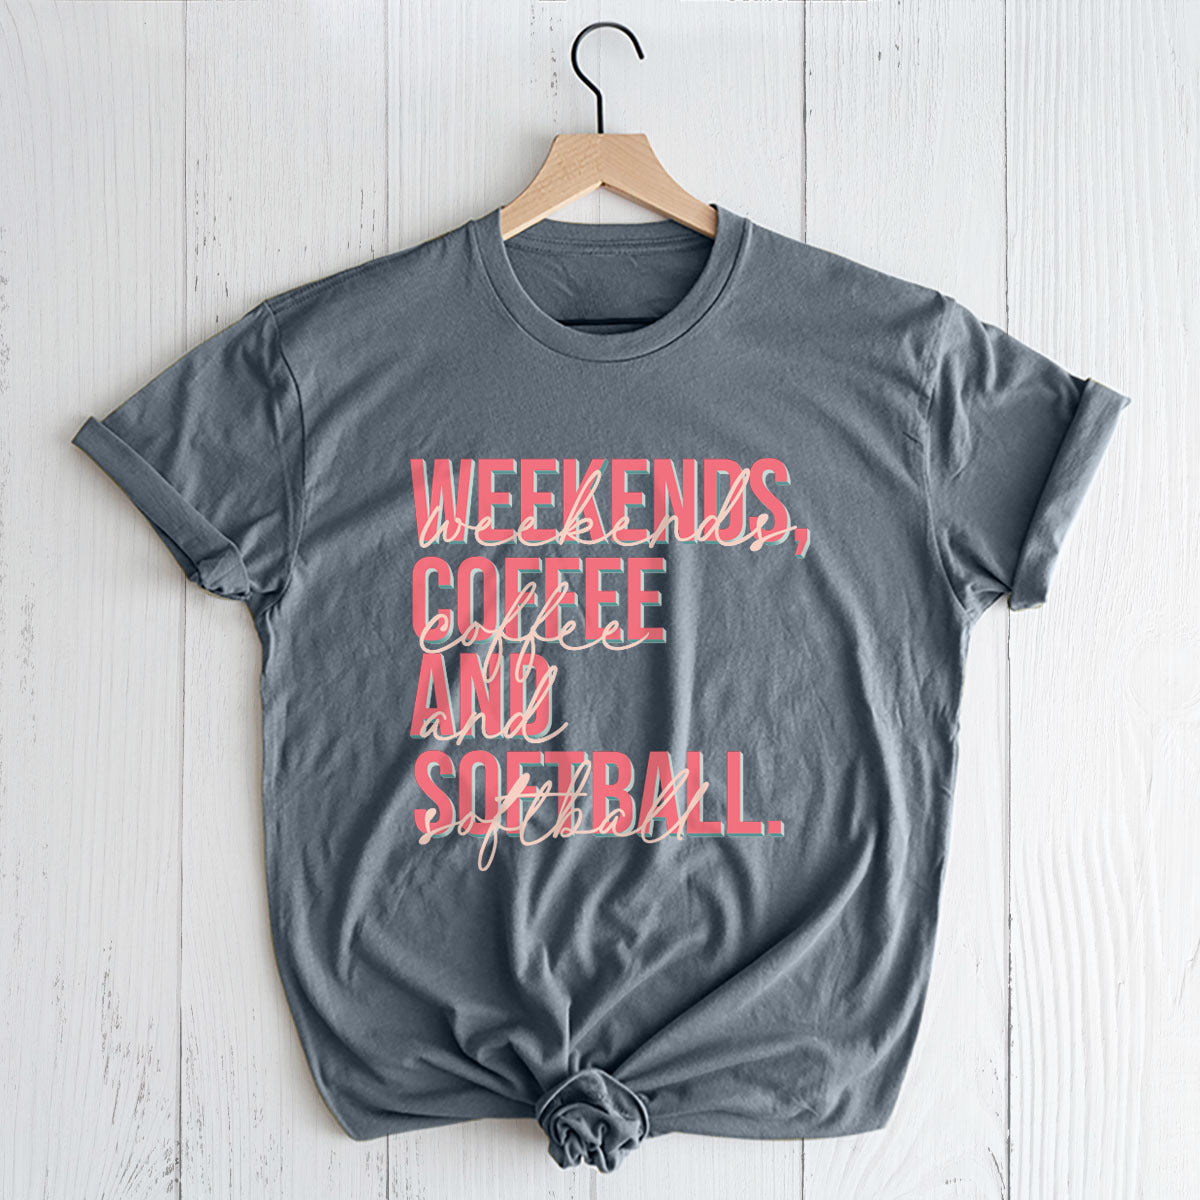 Weekends Coffee Softball